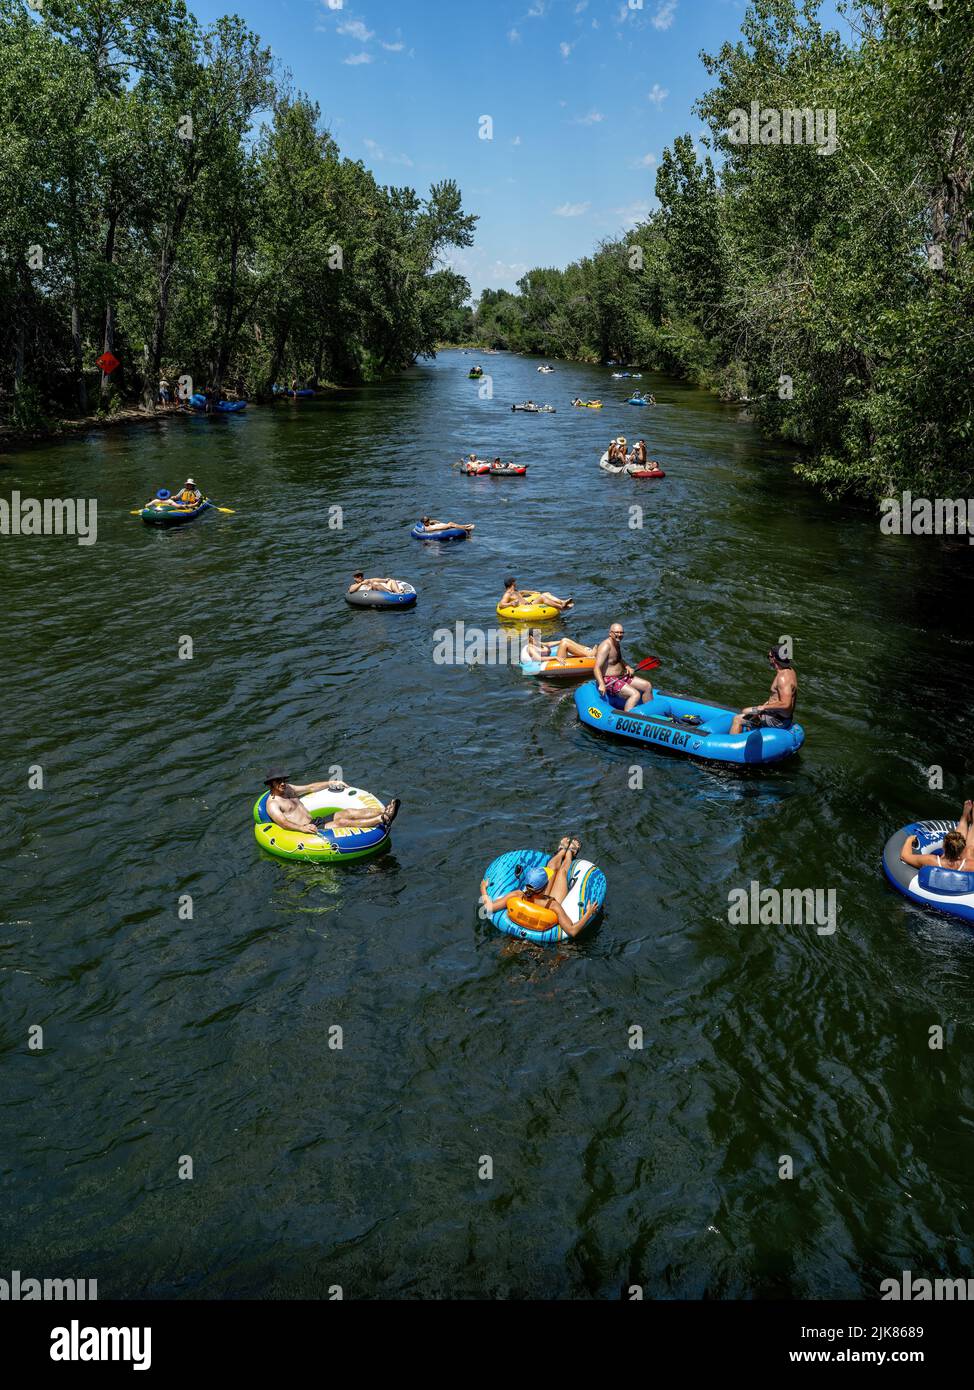 Rivière Boise avec des gens qui font du rafting par une chaude journée d'été Banque D'Images